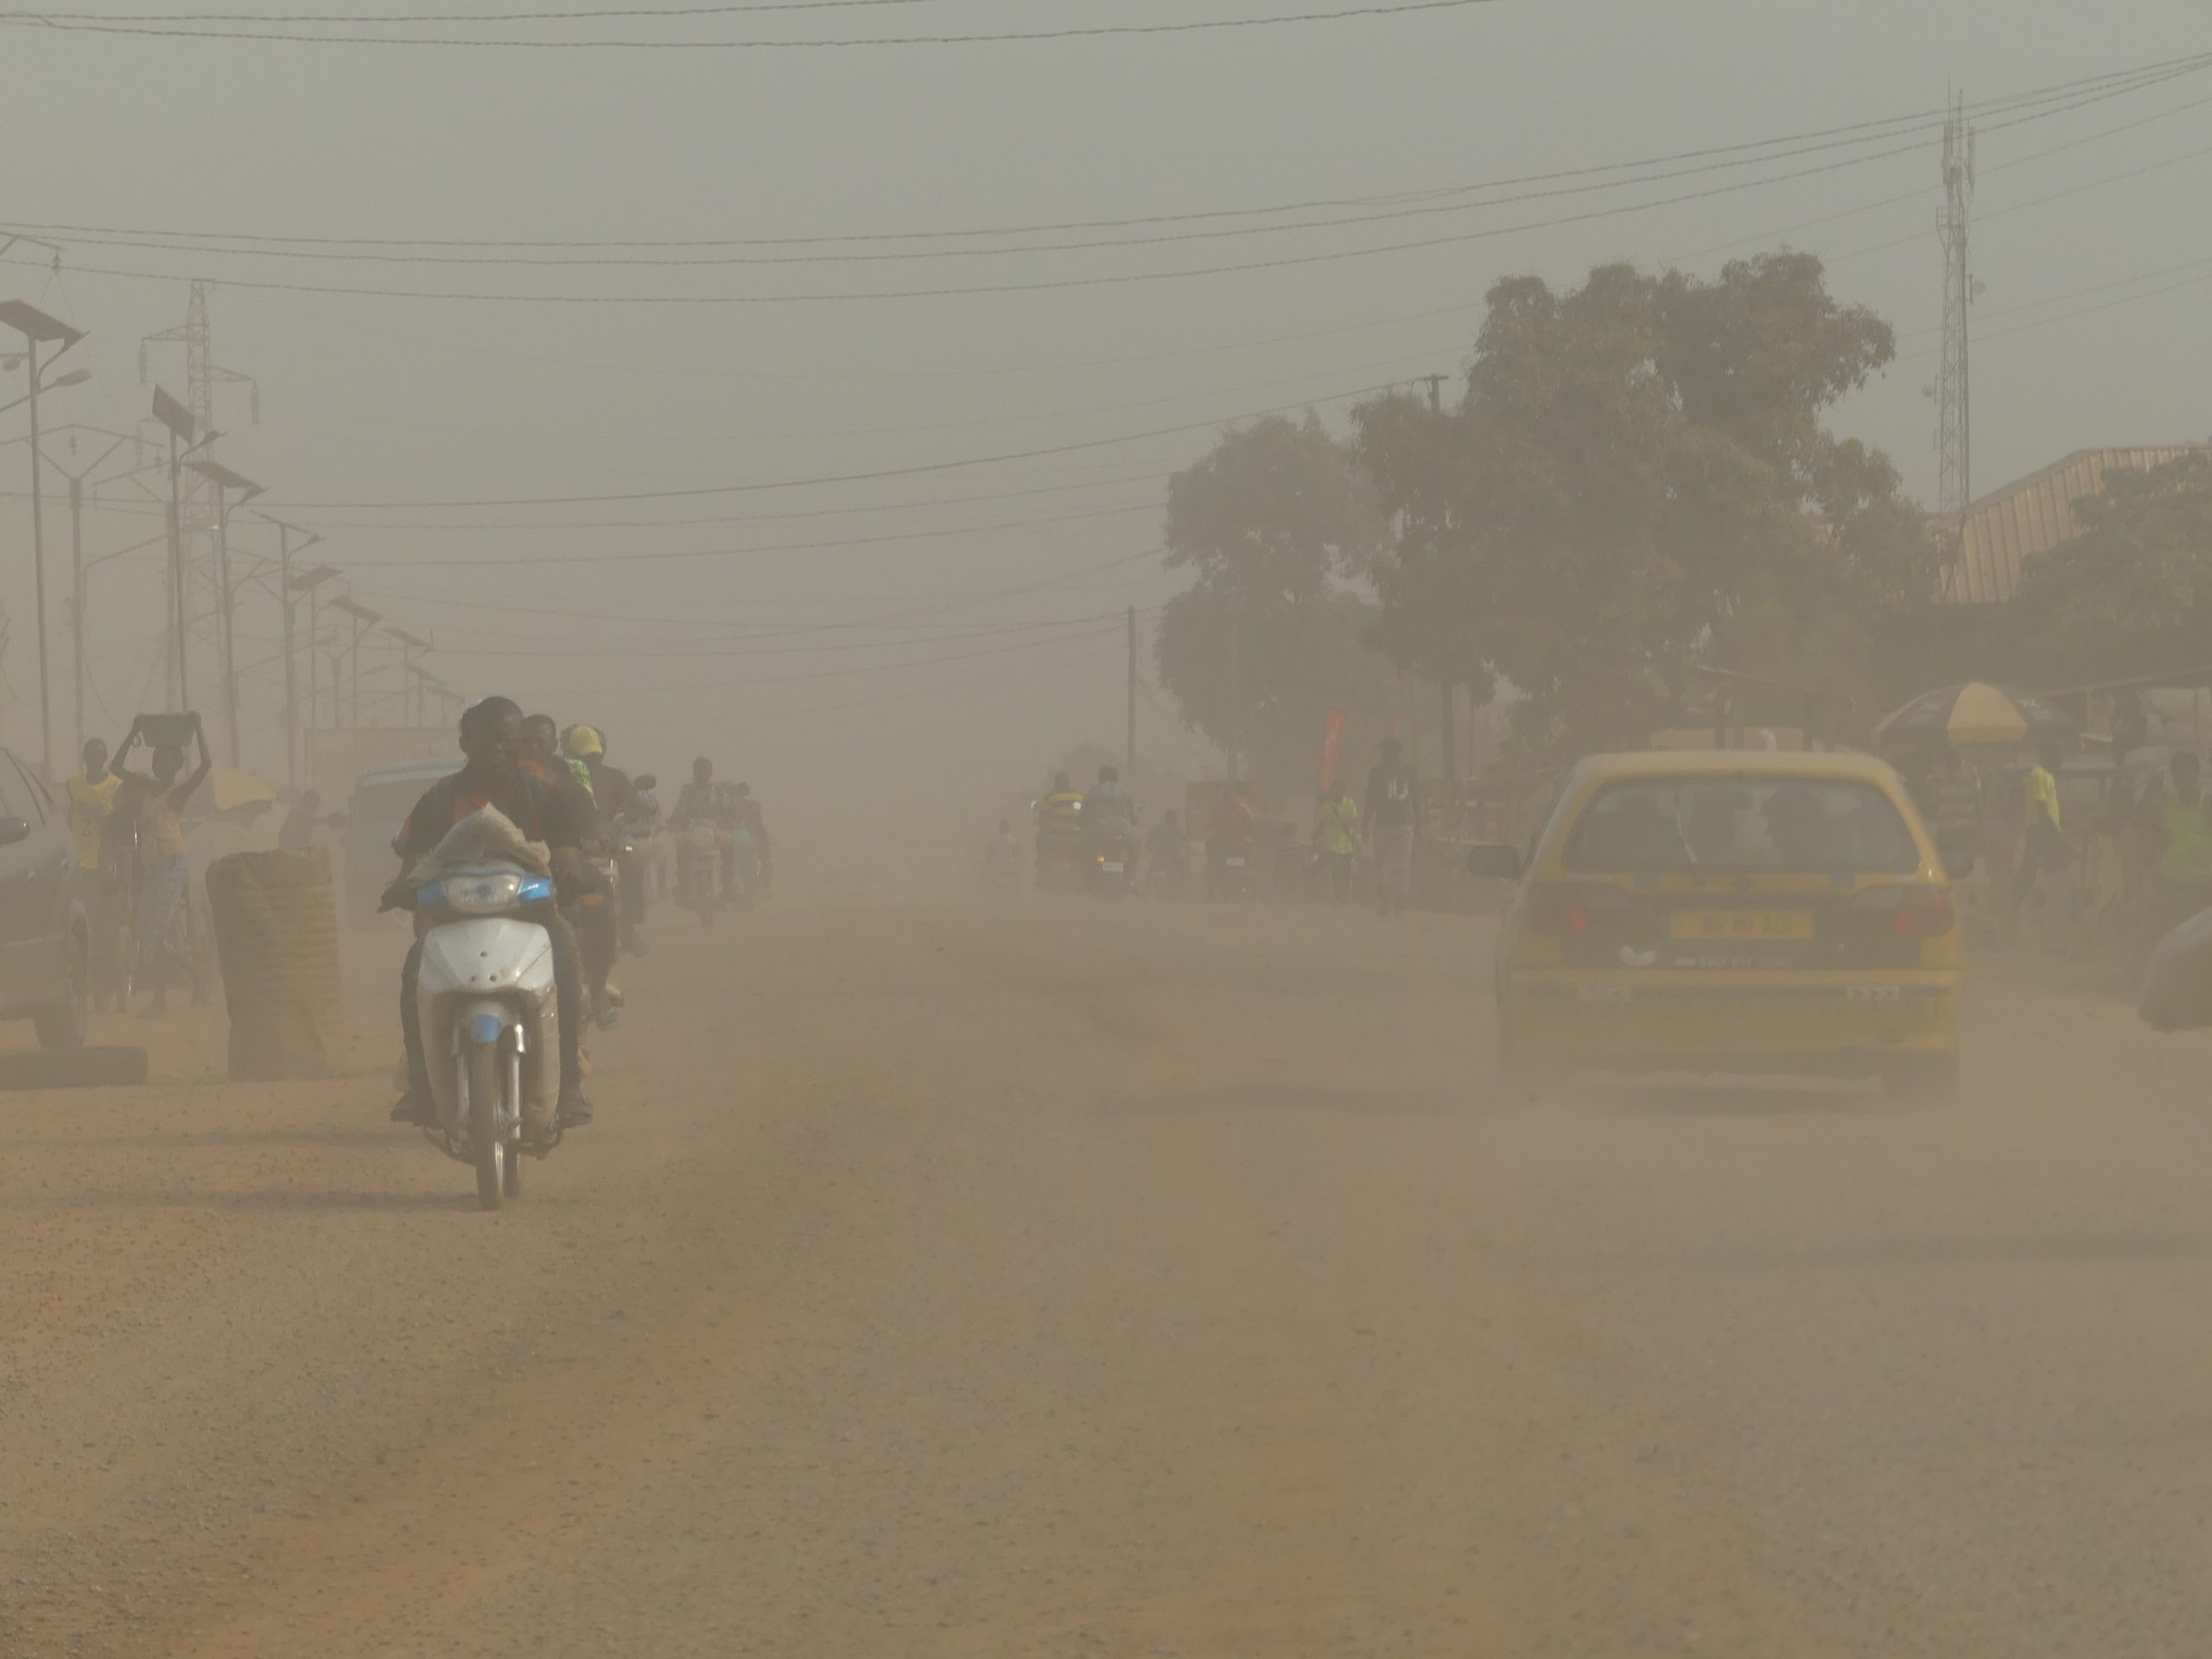 Bangui : des travaux de routes interrompus faute de financement par l’Etat